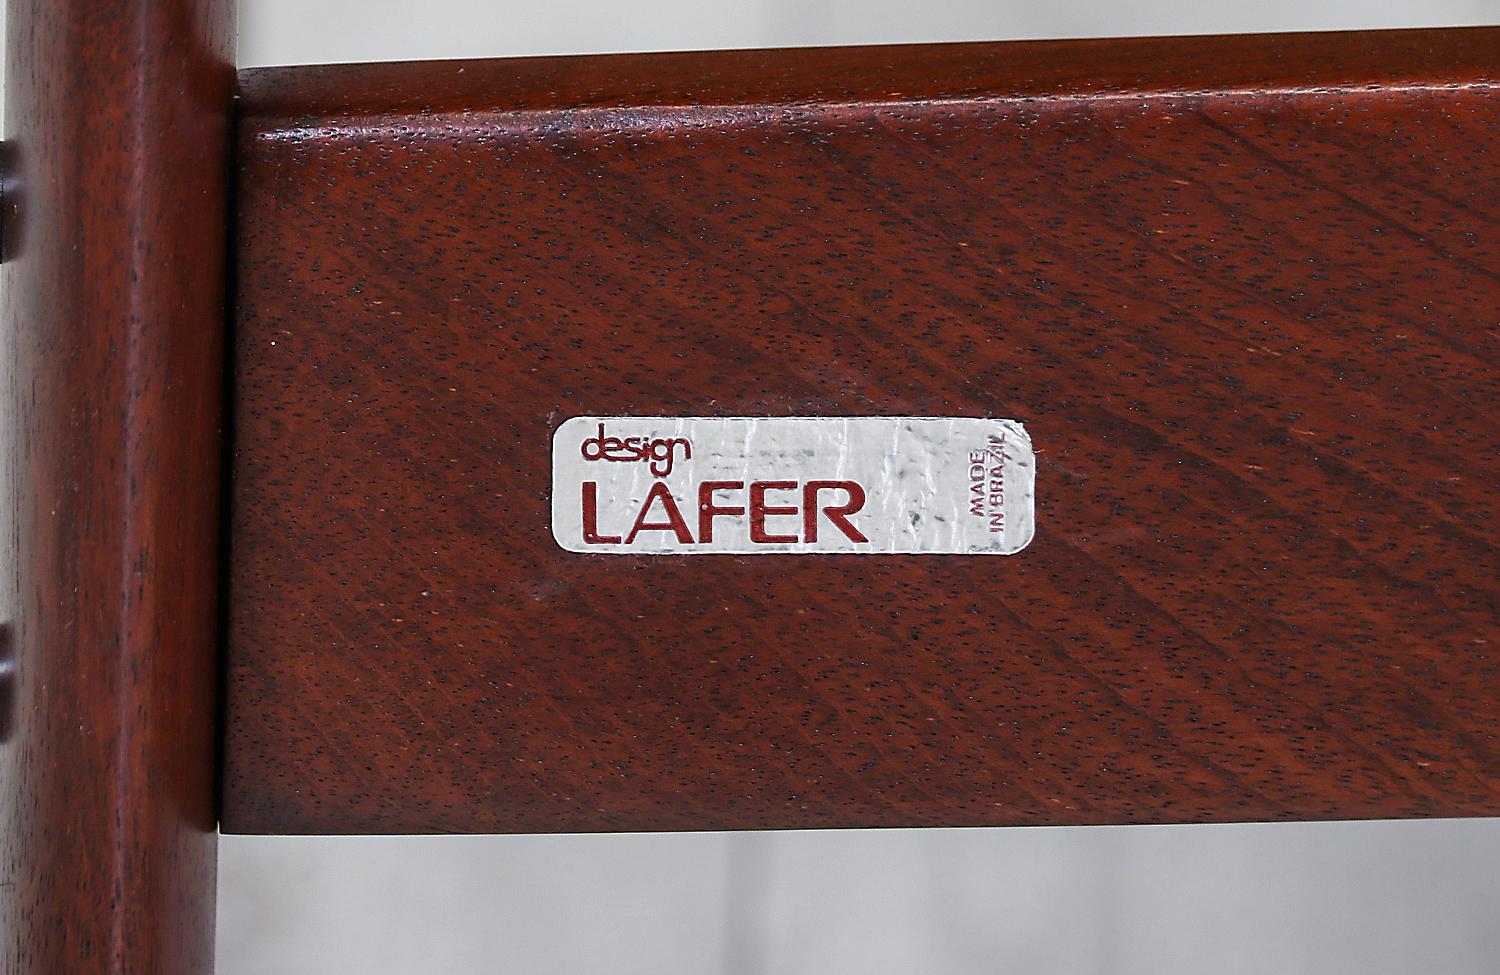 Percival Lafer MP-41 Series Brazilian Leather Sofa 5